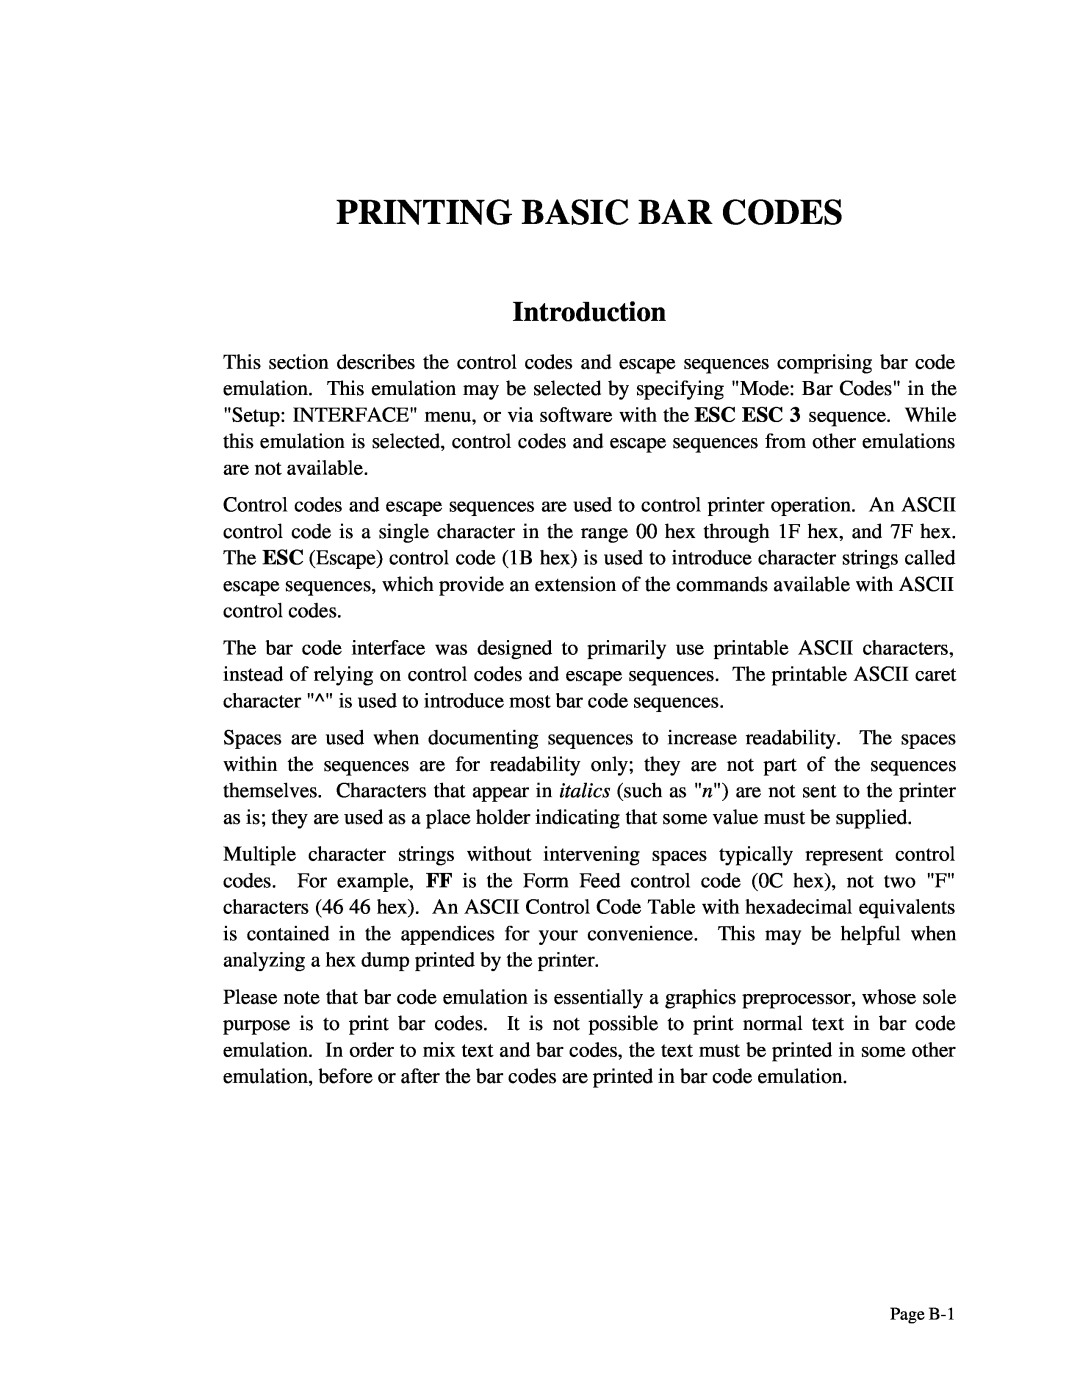 Printek 4503, 4300, 4500 manual Printing Basic Bar Codes, Introduction, Page B-1 